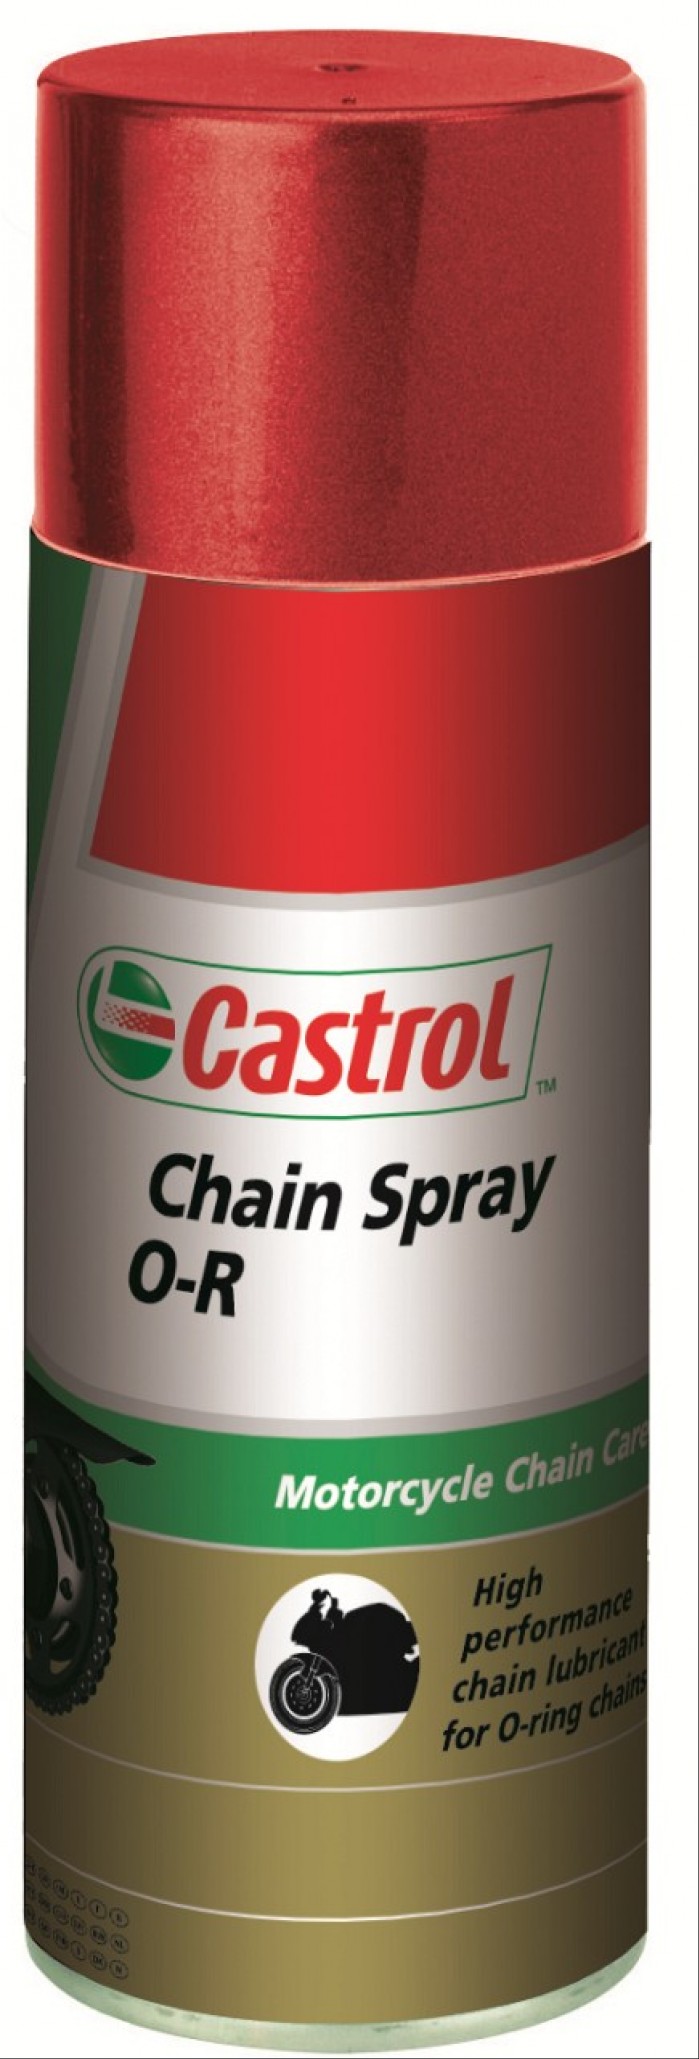 Chain spray O R P820385 03